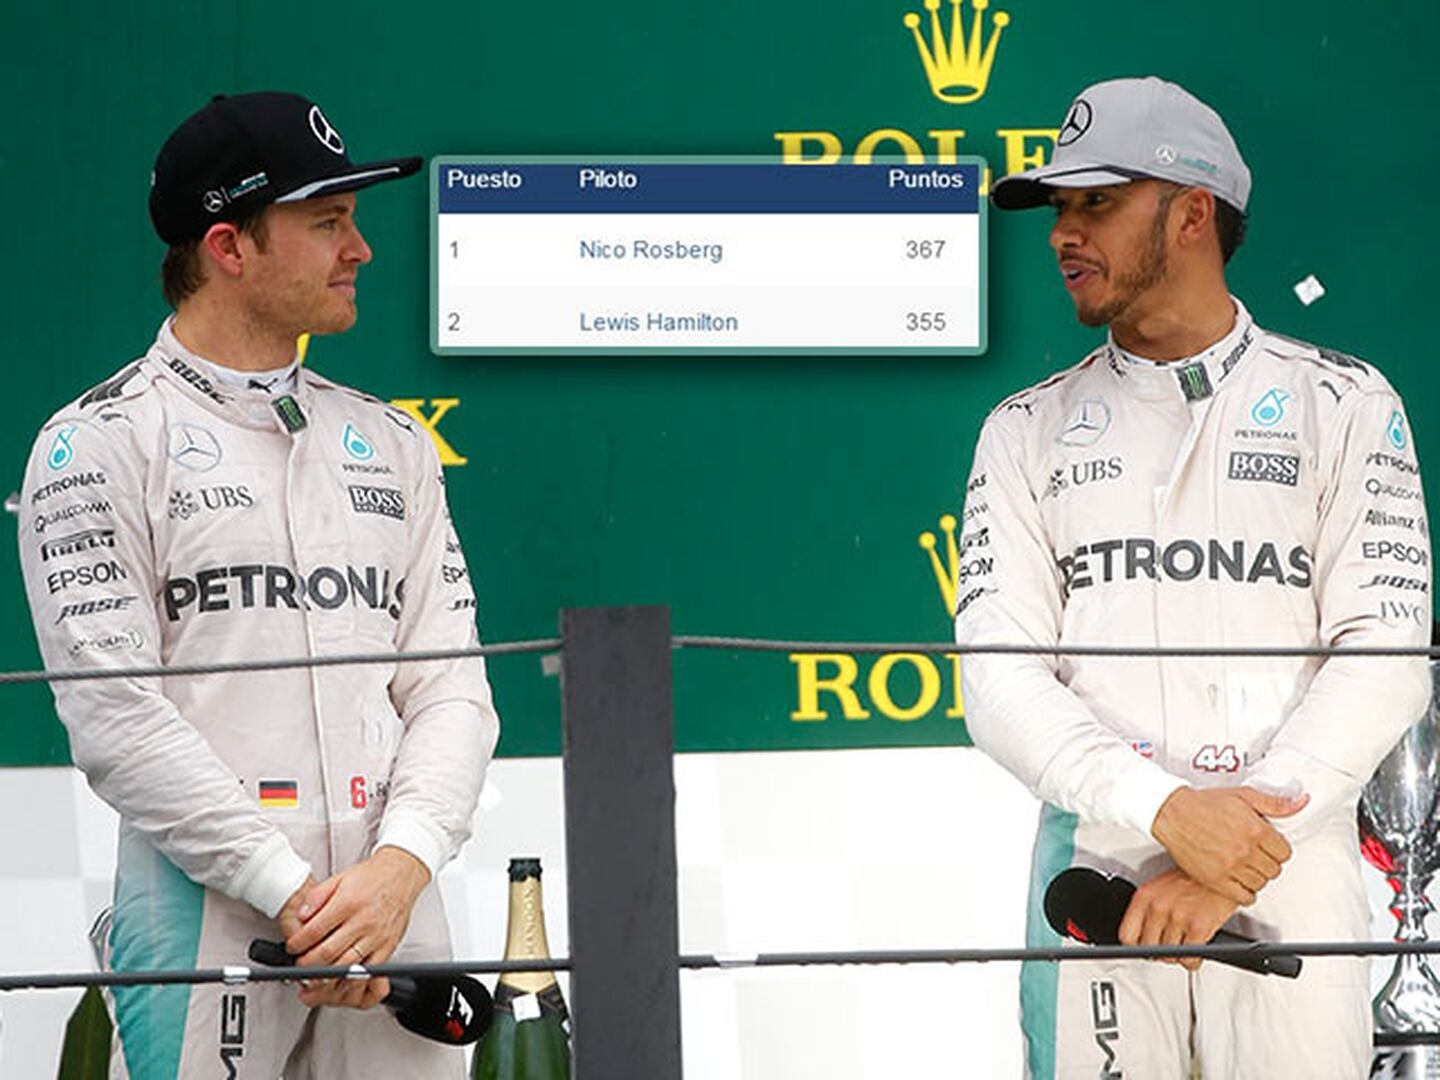 ¿Qué necesitan Rosberg y Hamilton para ser campeones?